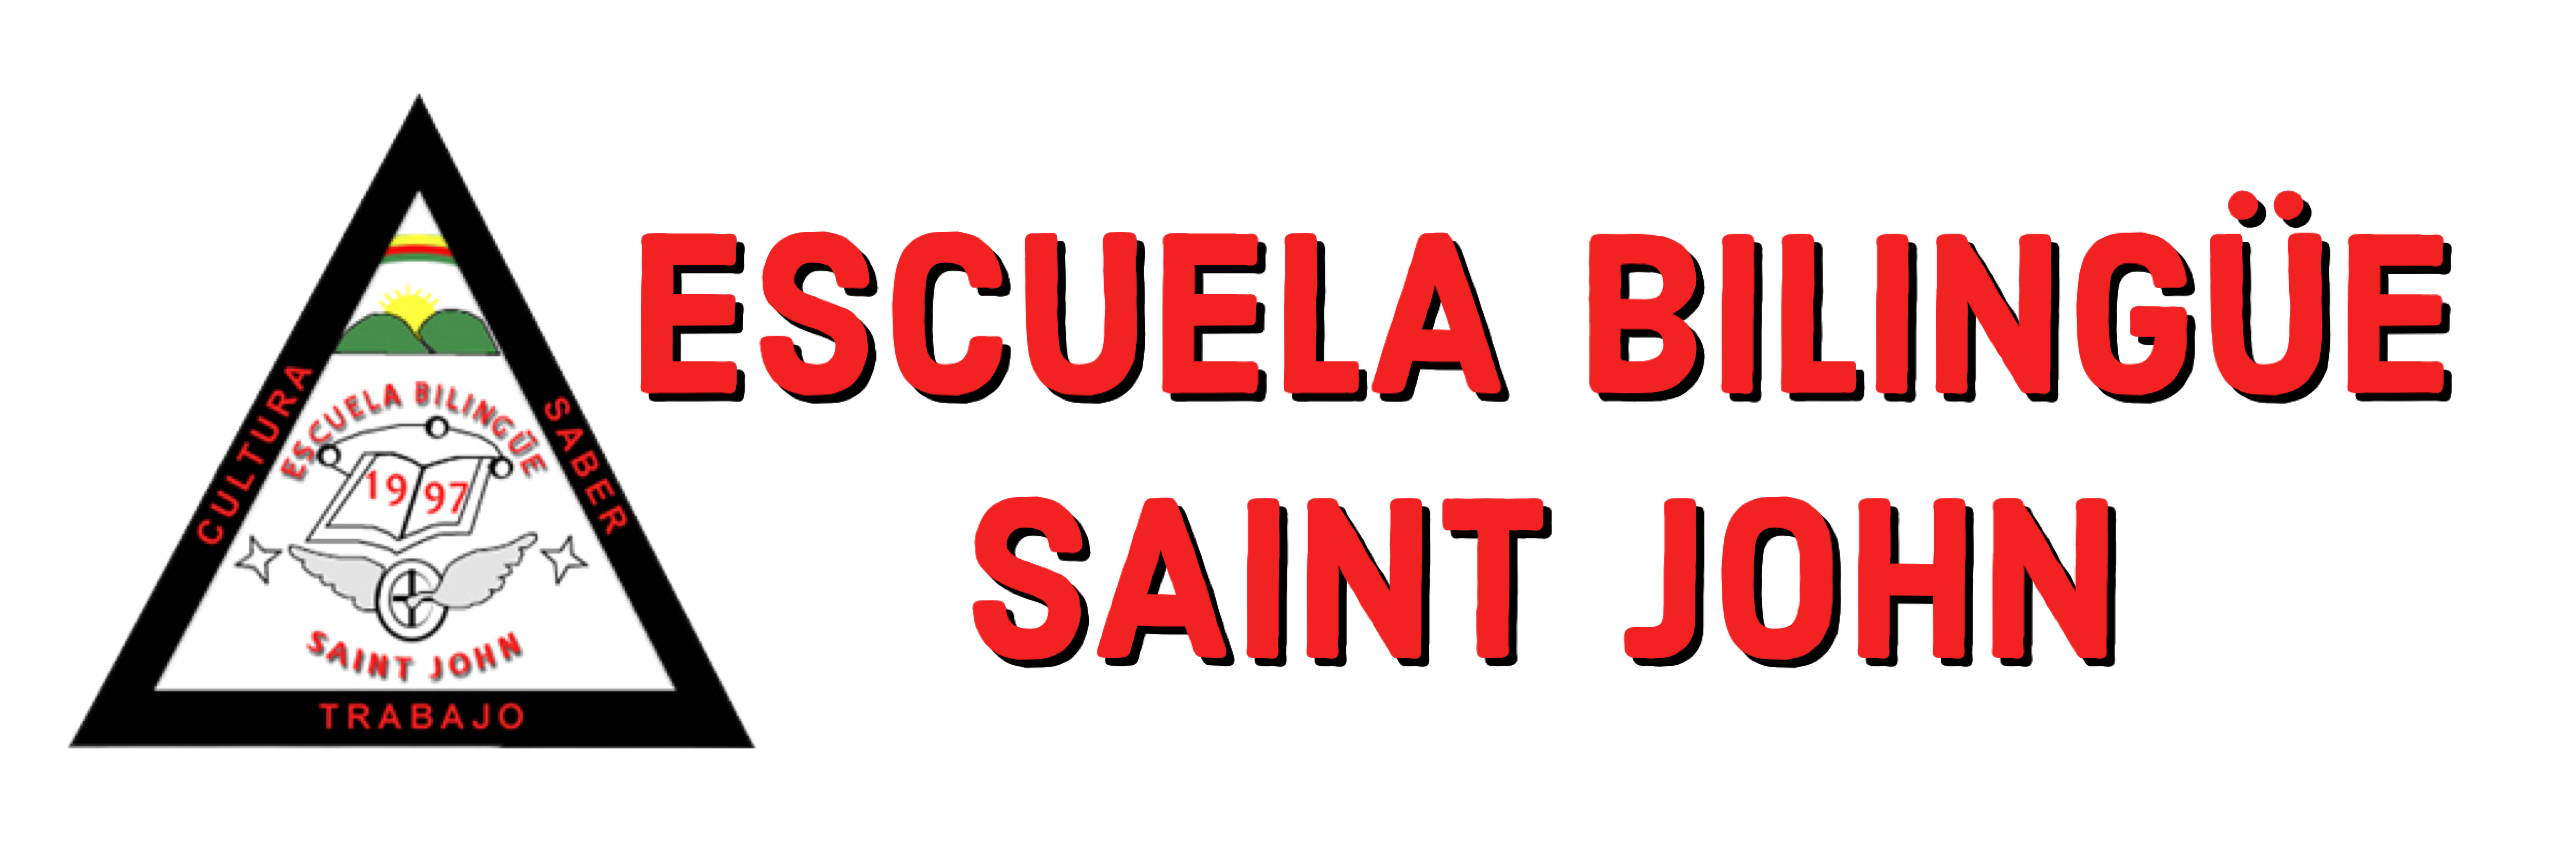 Escuela Bilingüe Saint John